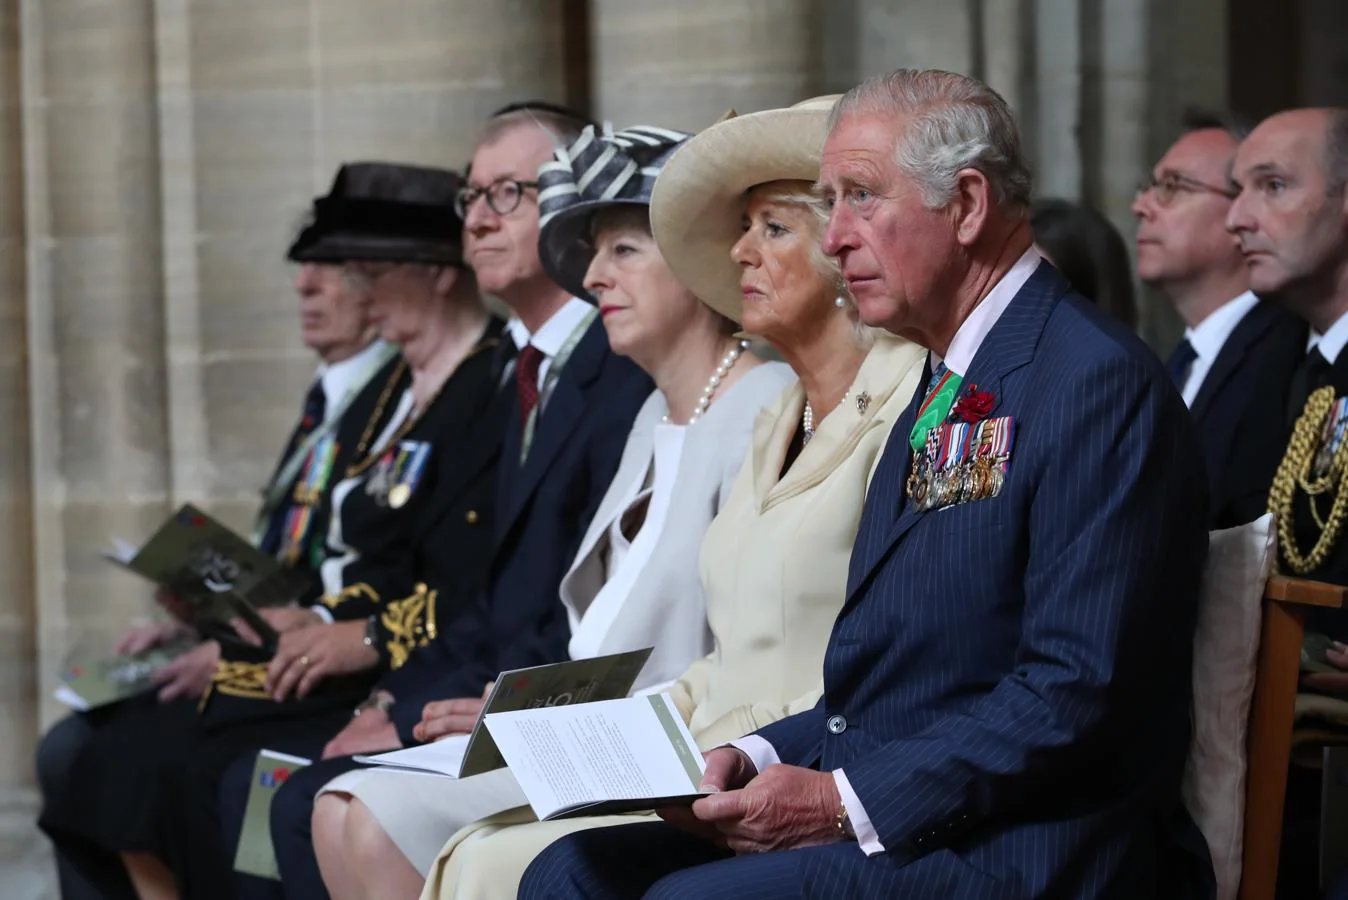 El principe Carlos, su esposa Camila, Theresa May y su esposo Philip May durante la ceremonia. 